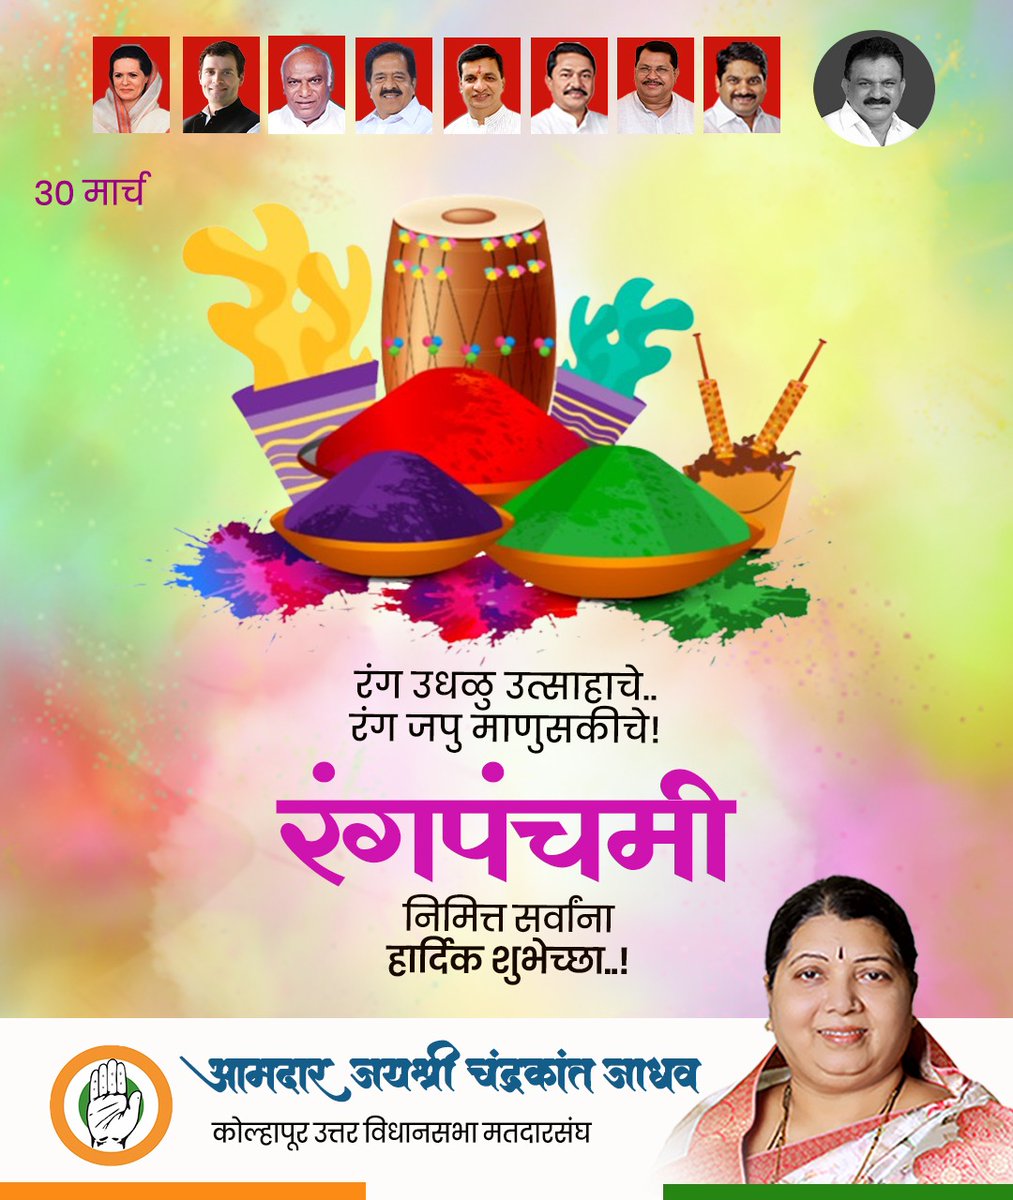 उधळूया रंग आनंदाचे, जपुया रंग माणुसकीचे..!
रंगपंचमी निमित्त सर्वांना हार्दिक शुभेच्छा..! 

#rangpanchami #festivalofcolors #happyholi